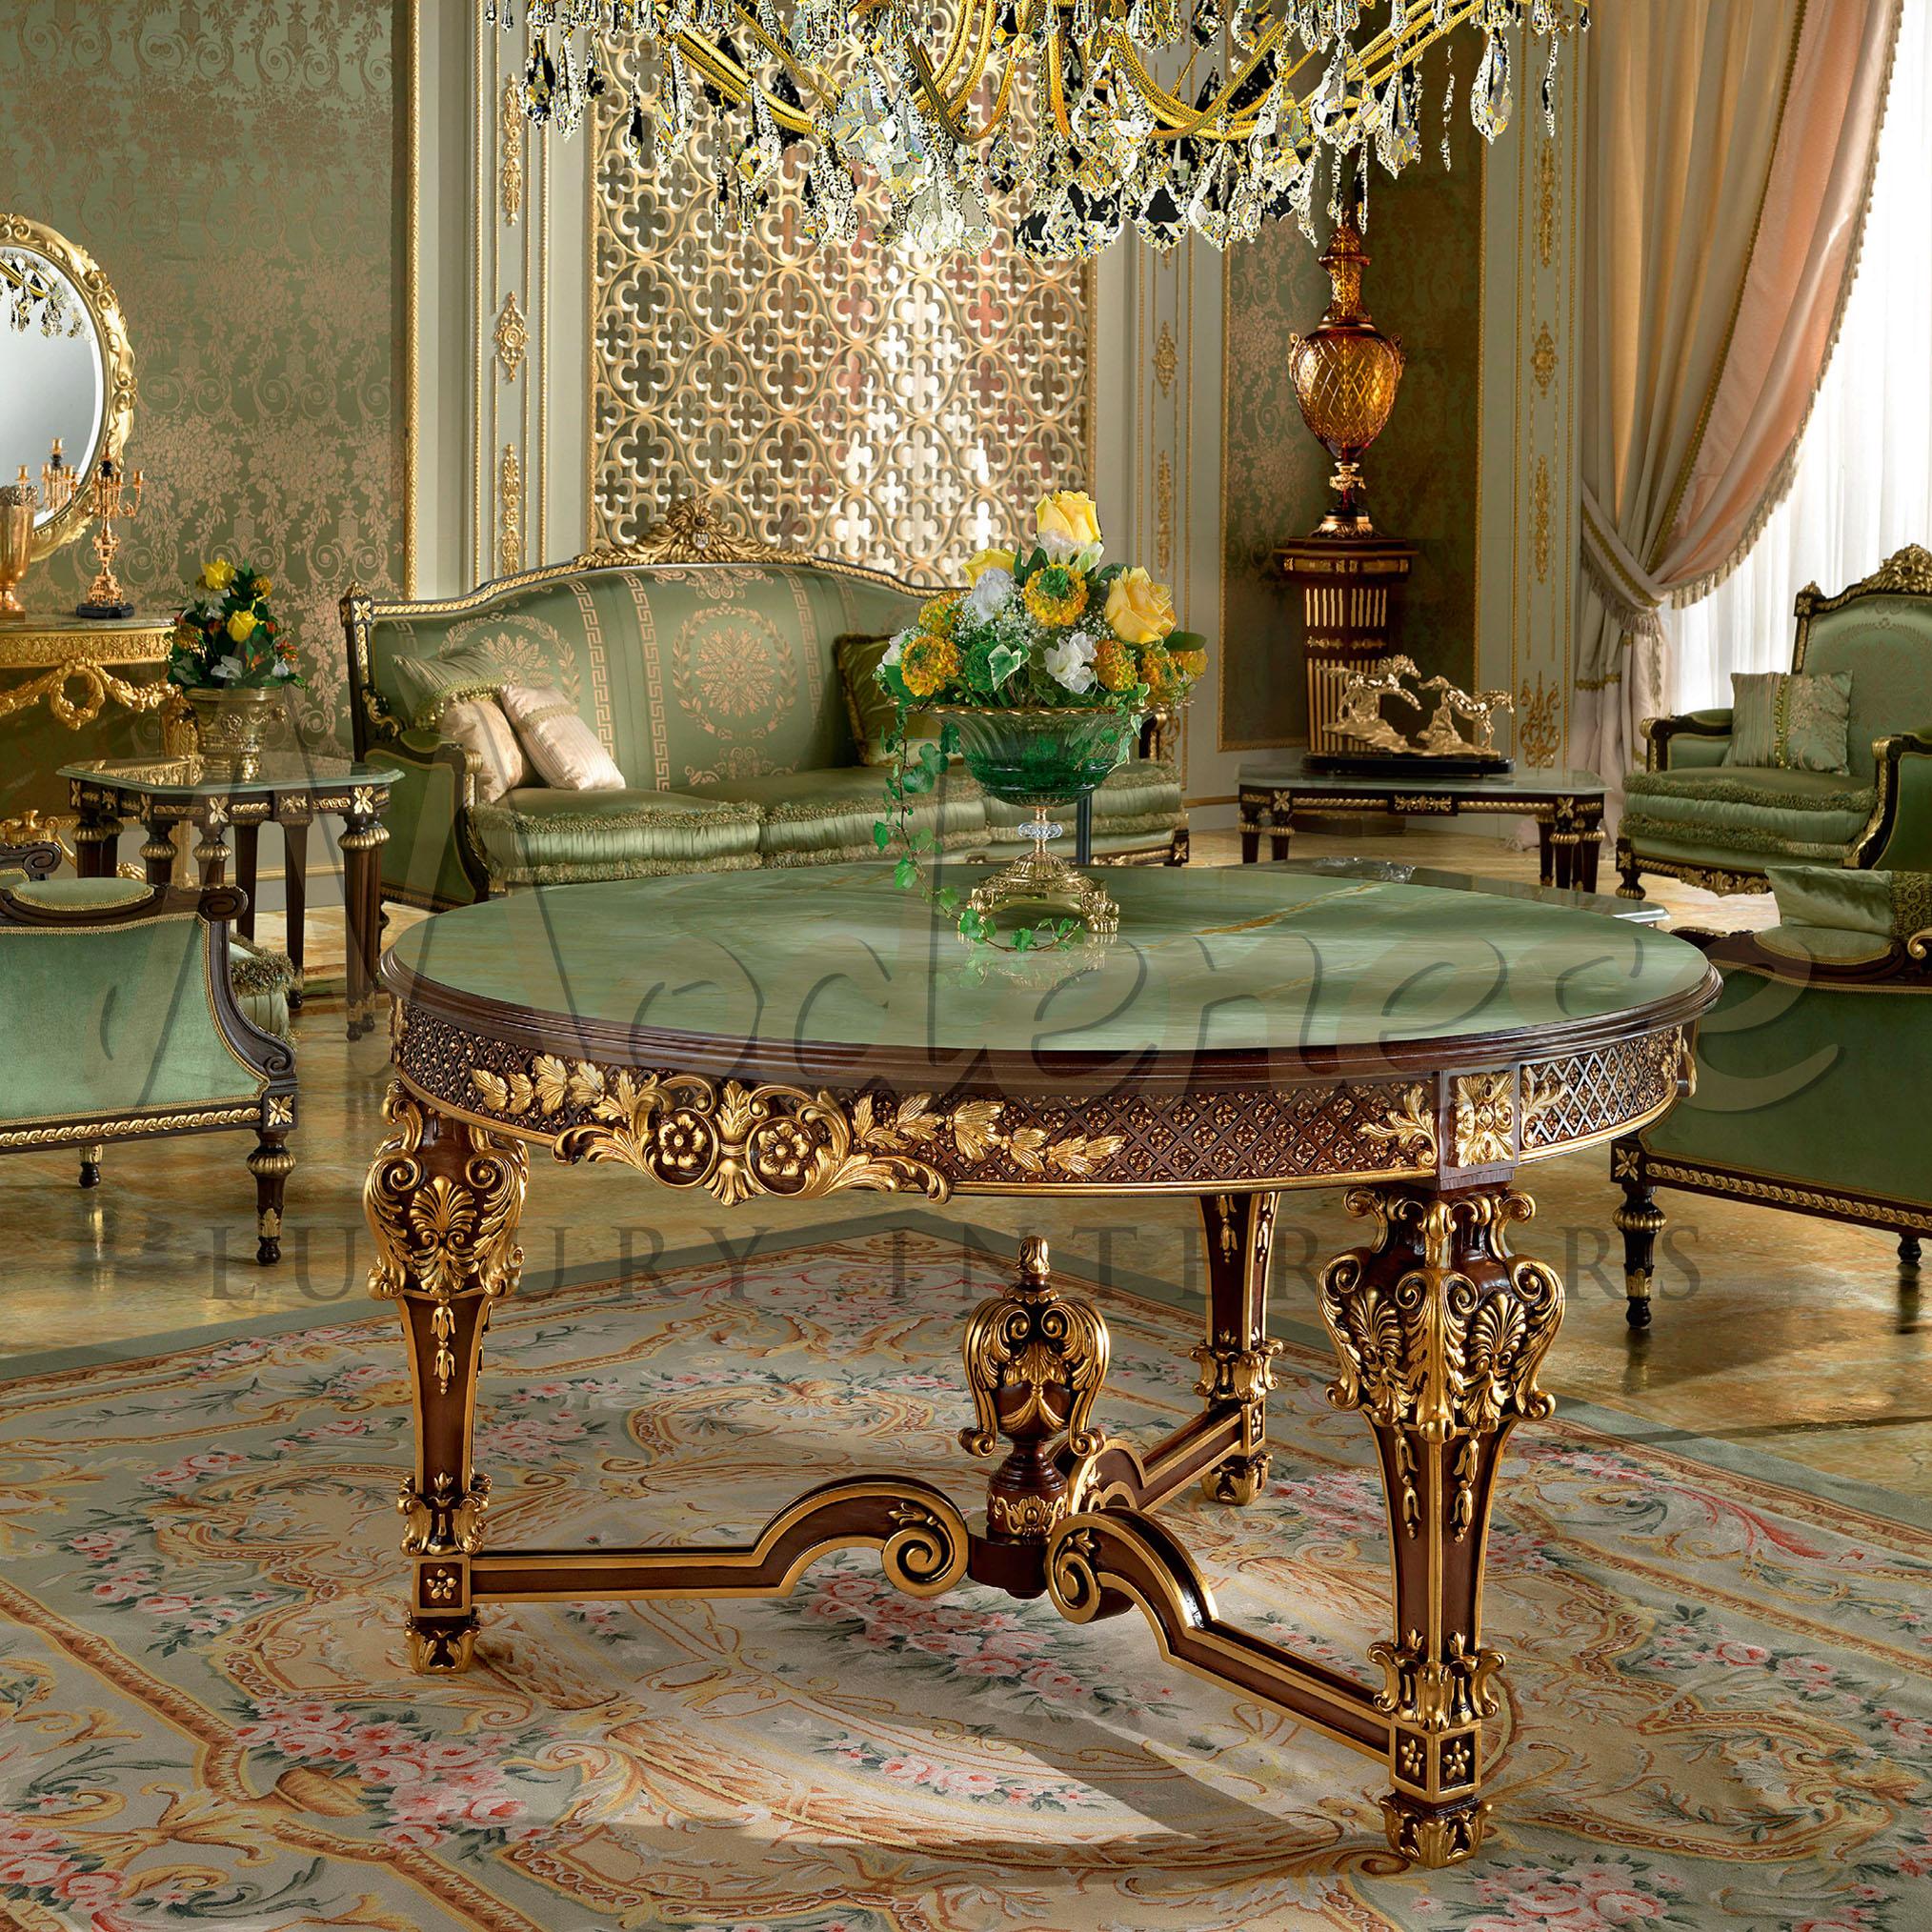 Un meuble décoratif qui fera la différence, cette table centrale ronde n'est pas pour tout le monde. Plateau en onyx vert afghan, pieds de style empire et finition en noyer avec applications de feuilles d'or sur l'ensemble des sculptures. Tant de